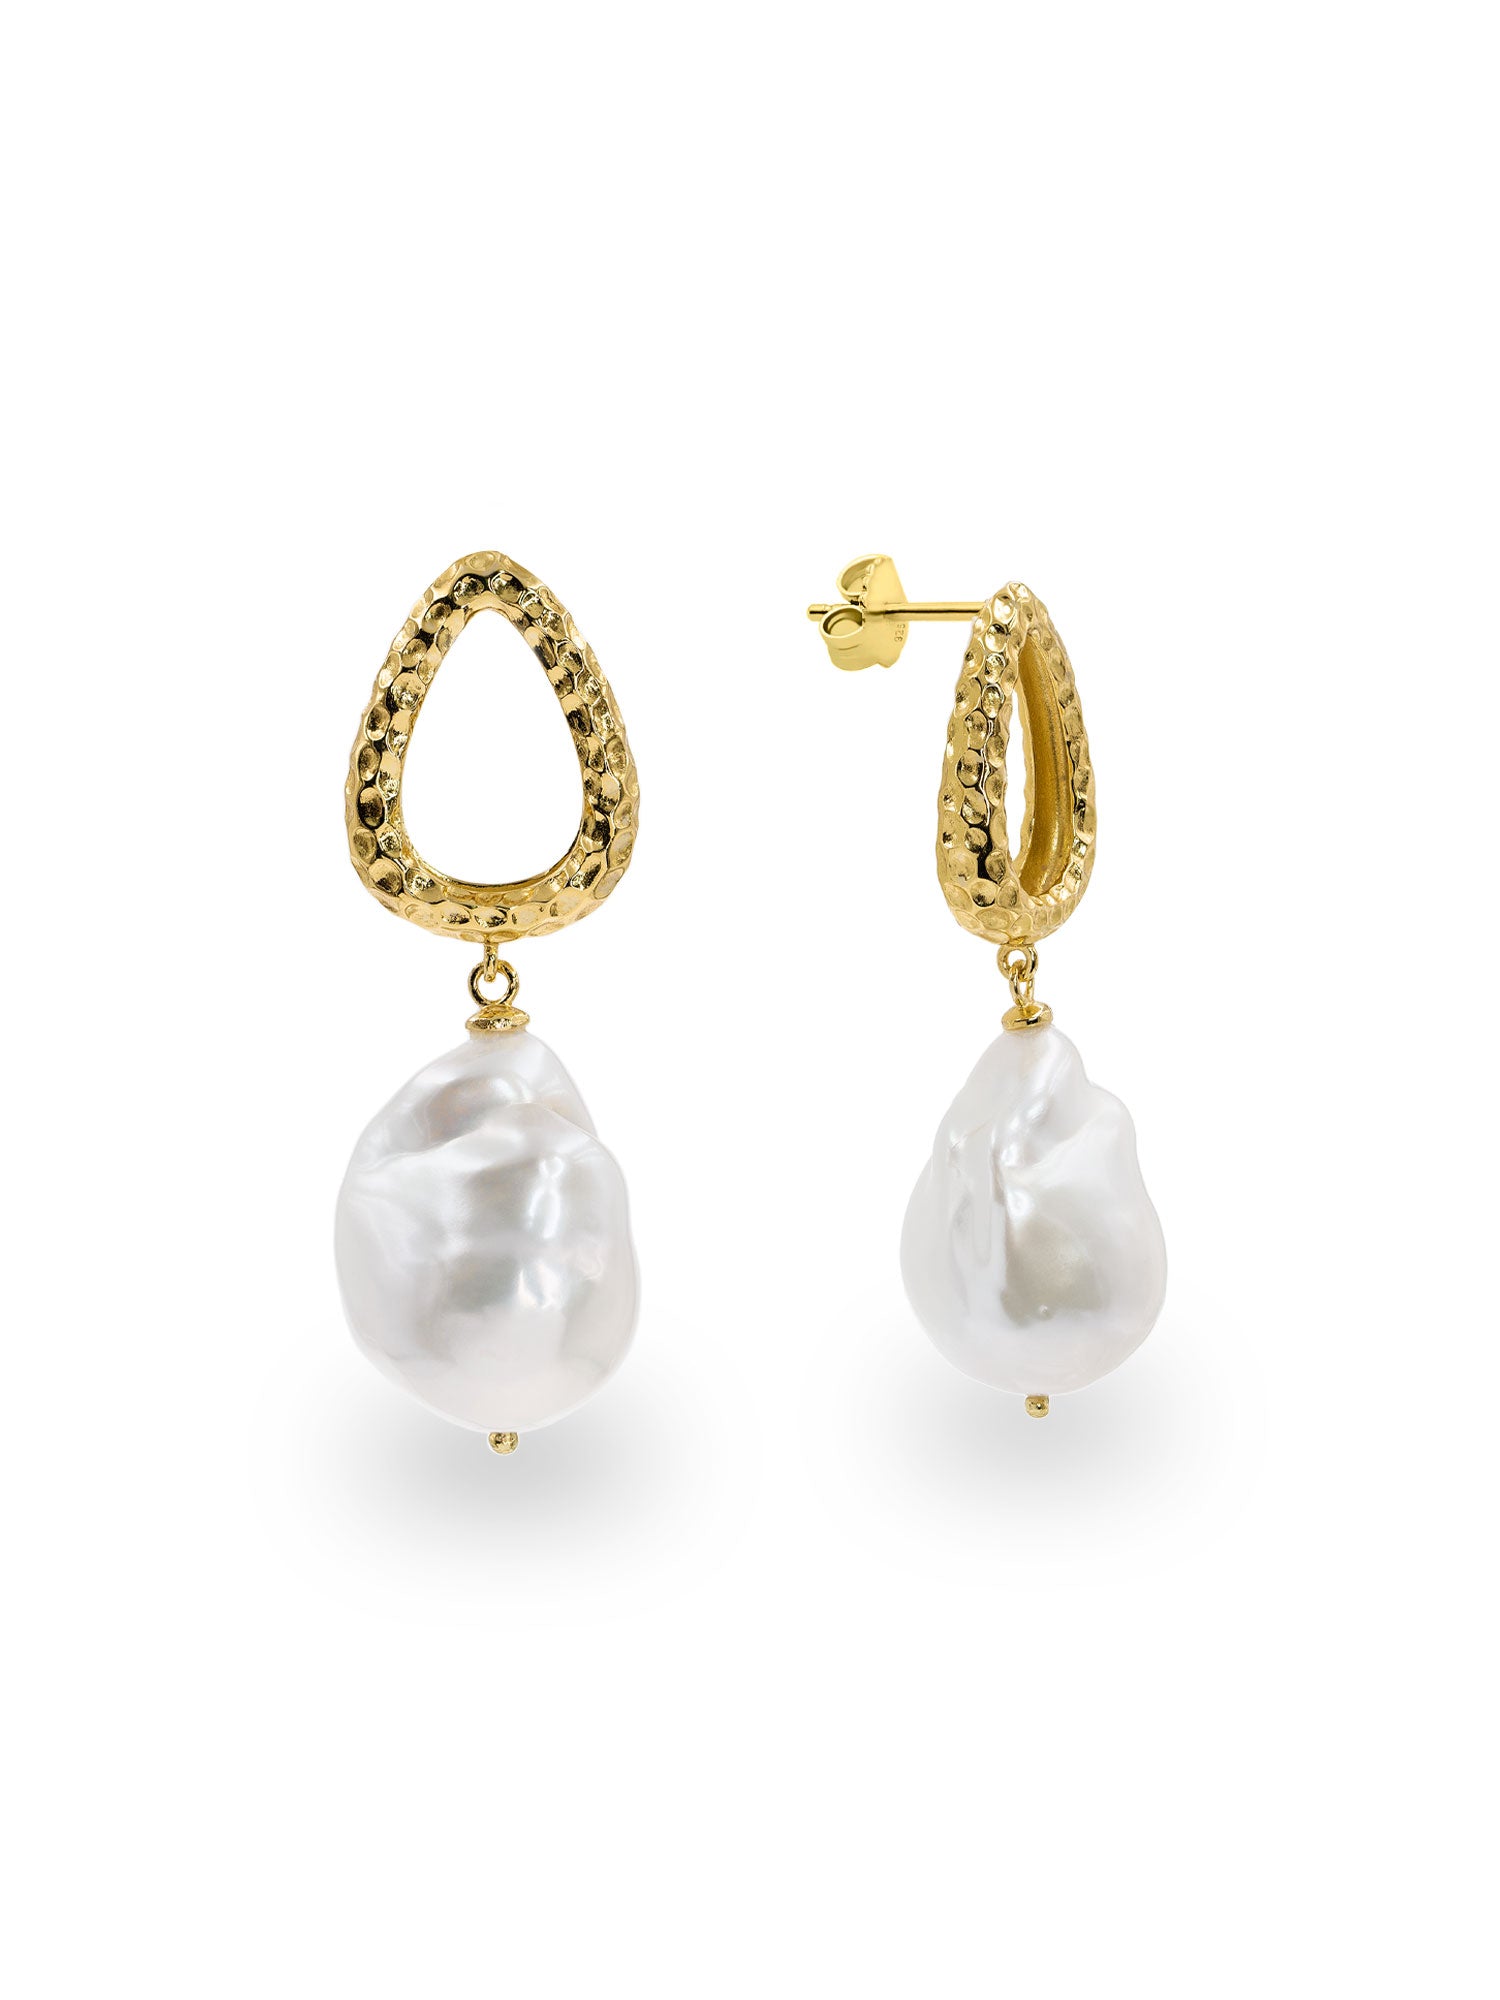 Pendientes de mujer de perlas cultivadas barrocas grandes y plata bañada en oro Secret & You